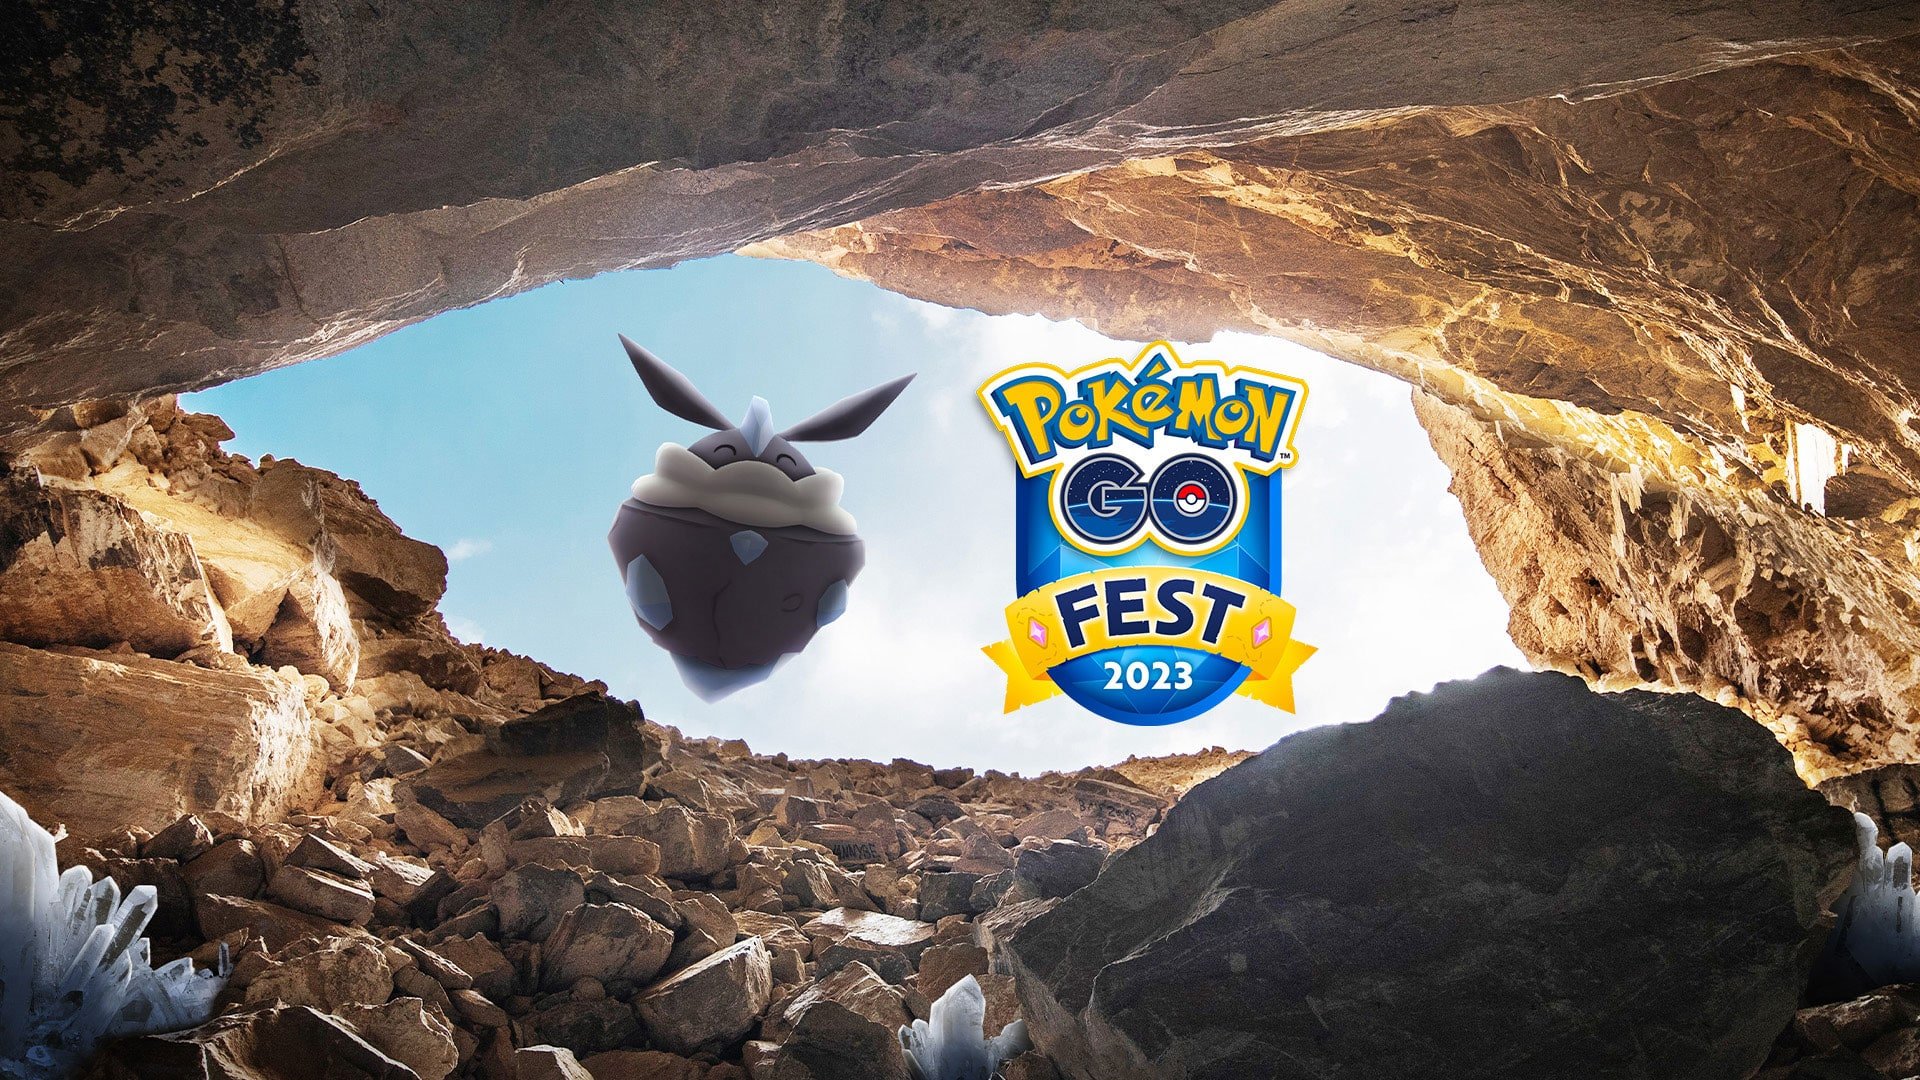 Pokémon GO Fest 2023 Details Revealed: Diancie and 10 new Shiny Pokémon!